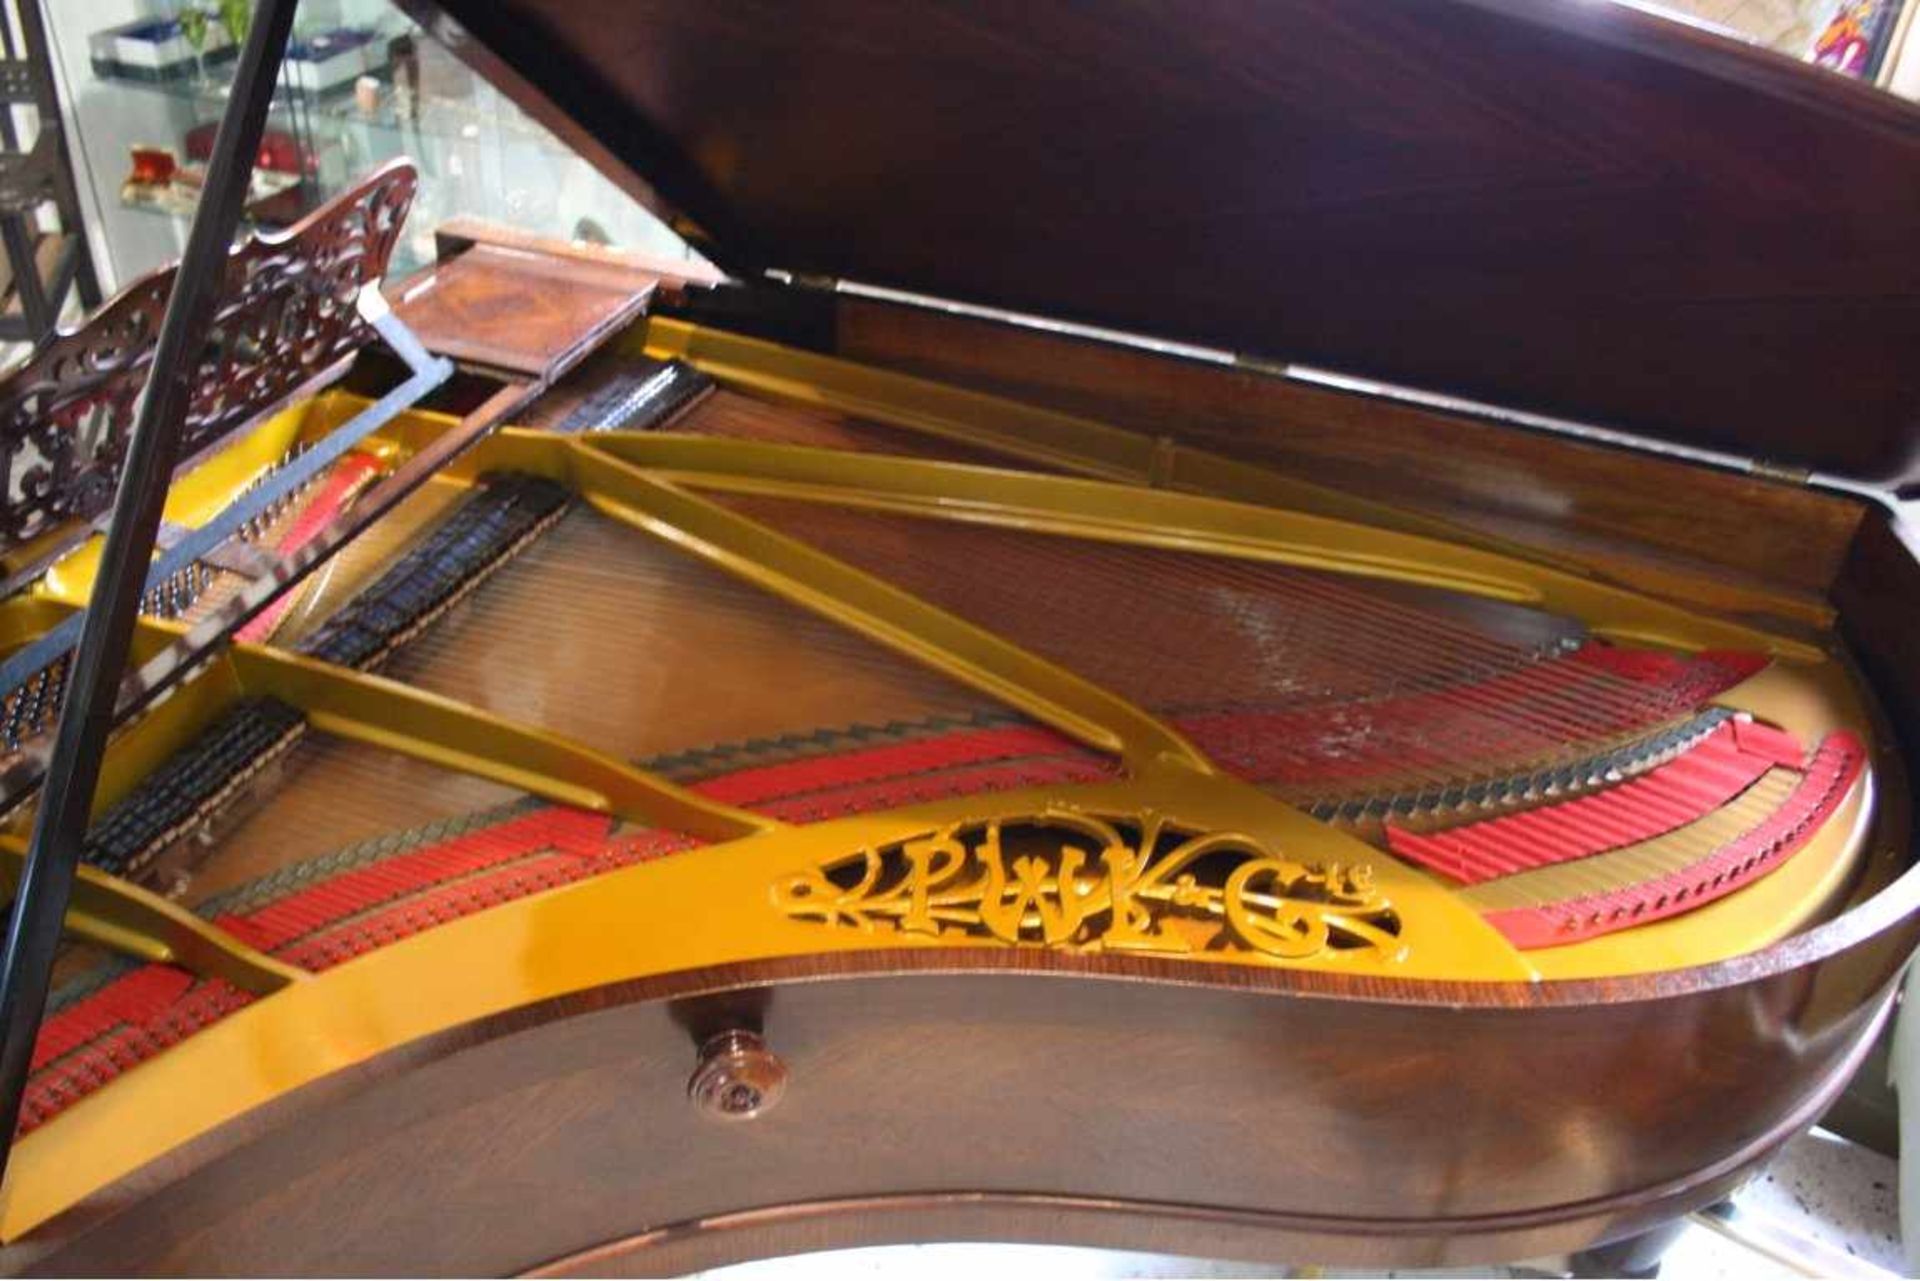 Pleyel Flügel aus dem Jahr 1904 - Lieblingsmarke von Chopinmit der Seriennummer 132202. Der - Bild 2 aus 7